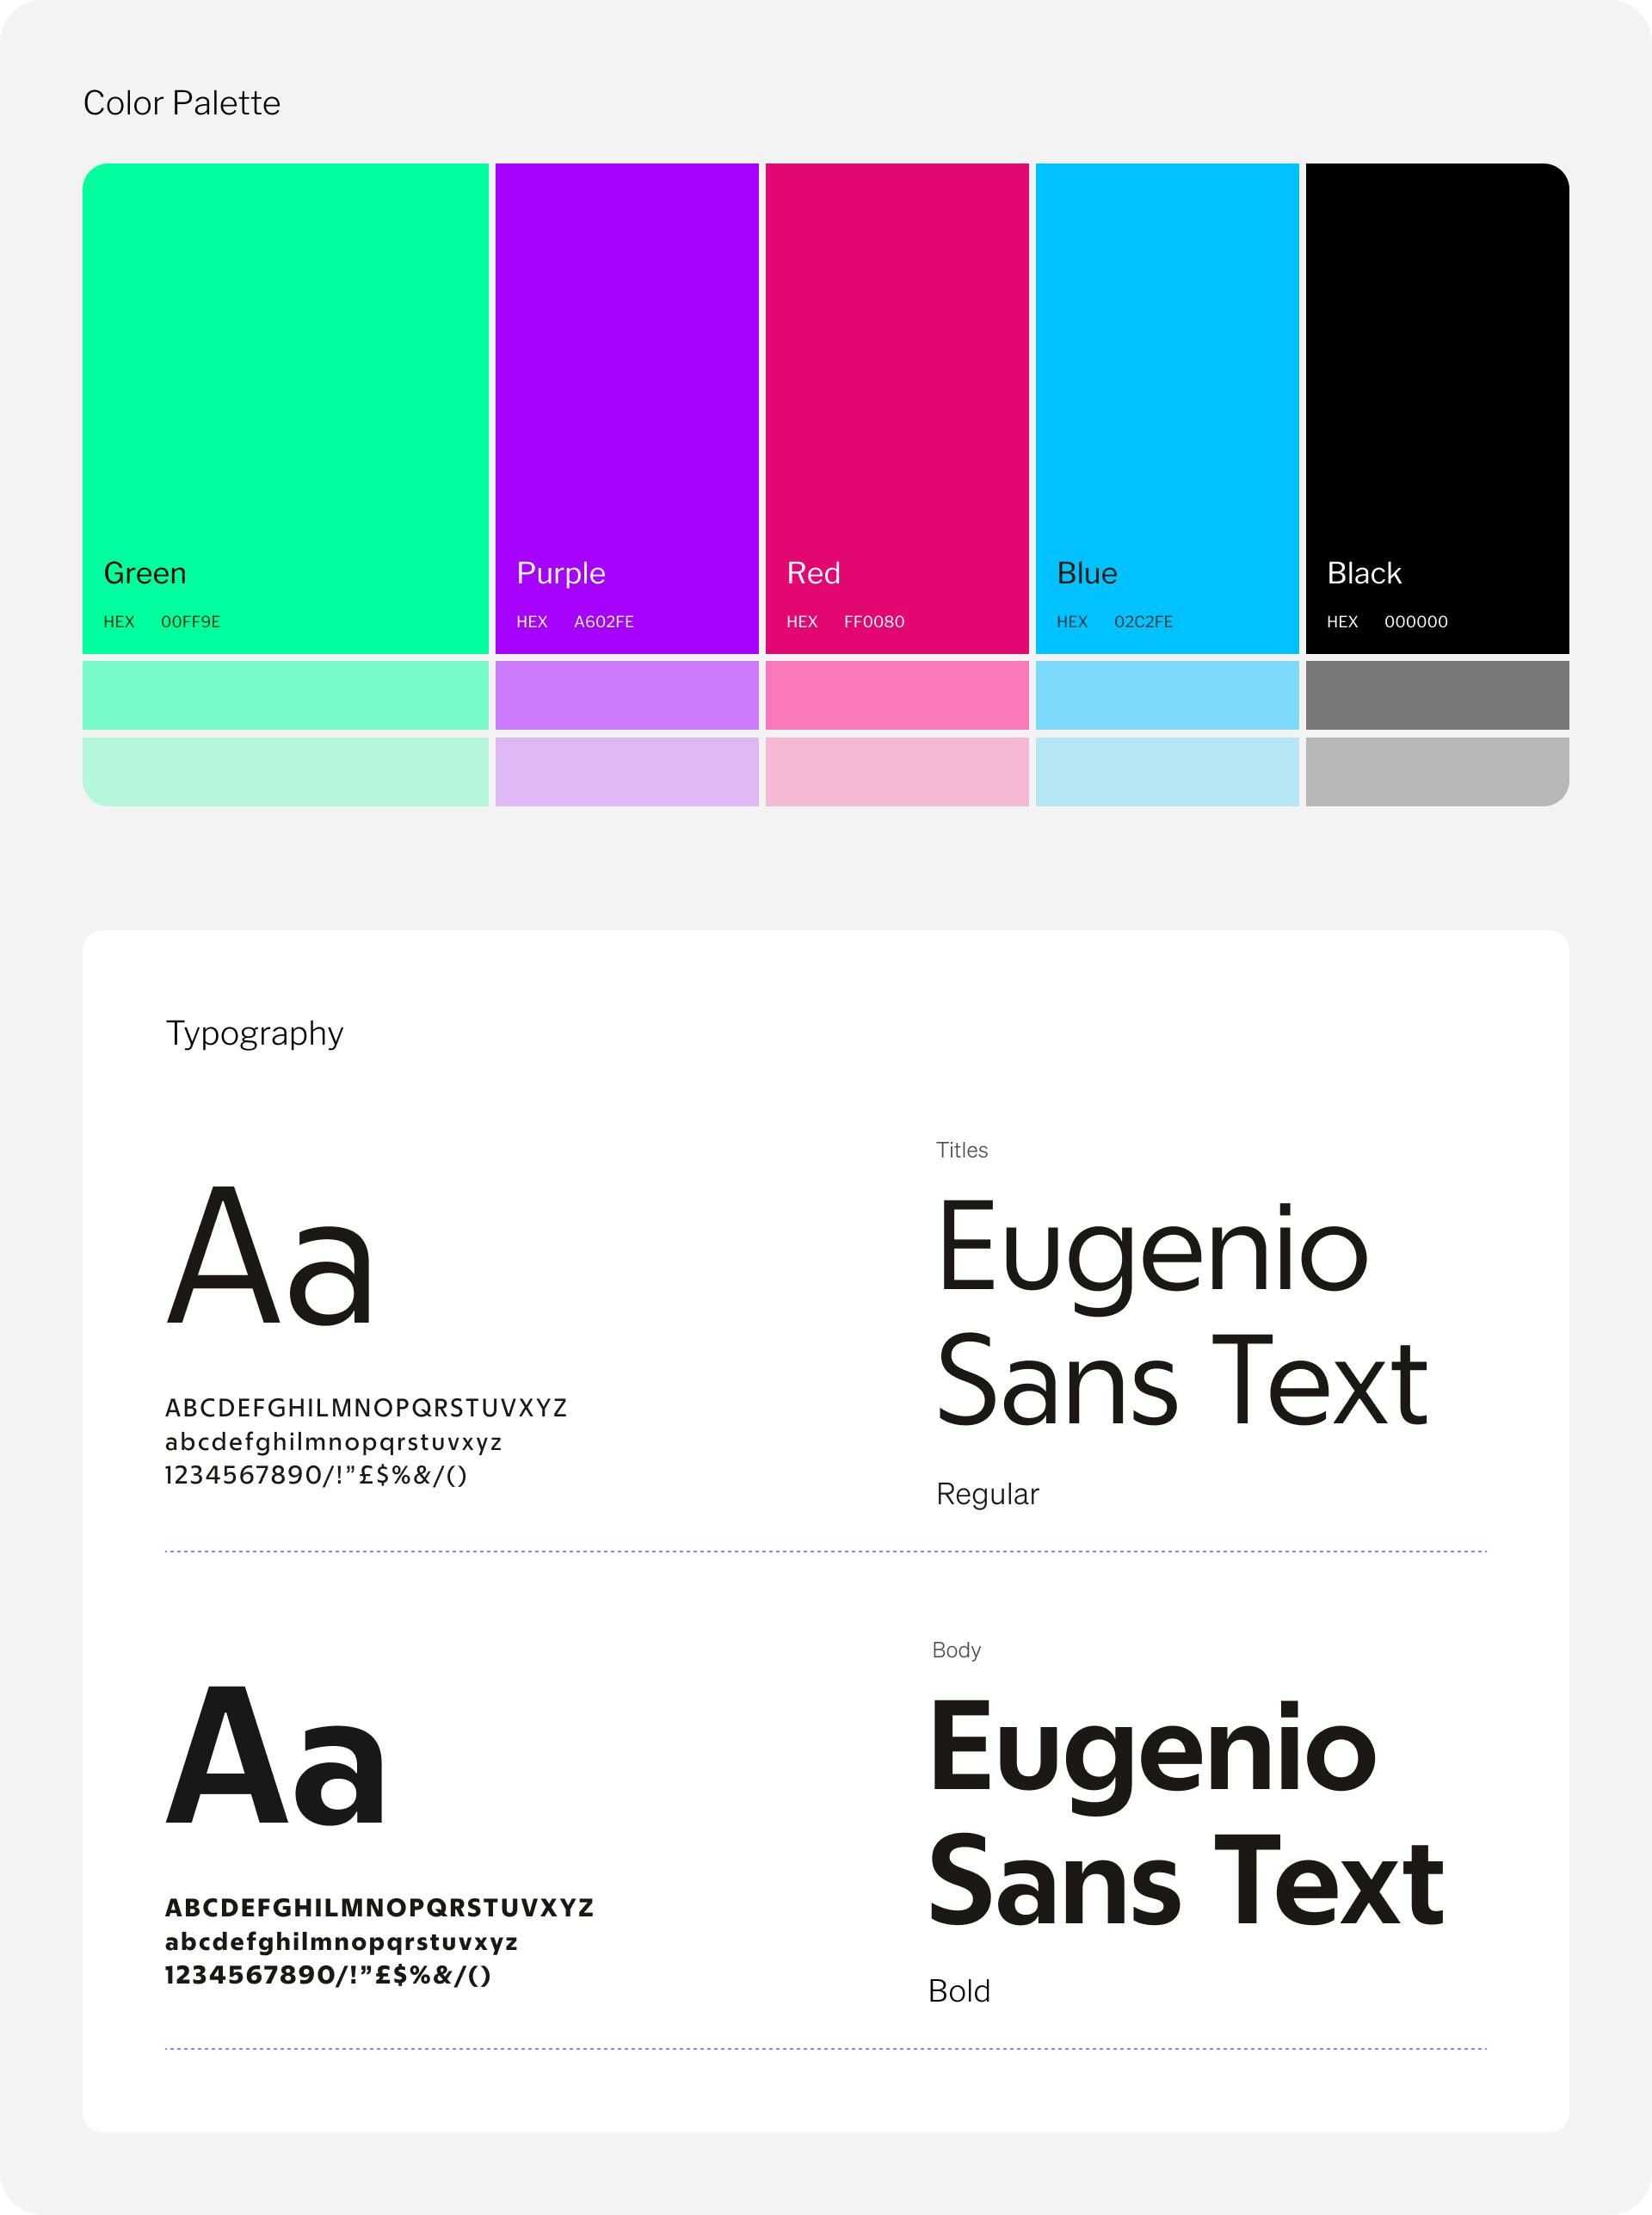 Le scelte cromatiche e il font selezionato (Eugenio San Text) per il sito di Italian Tech Week